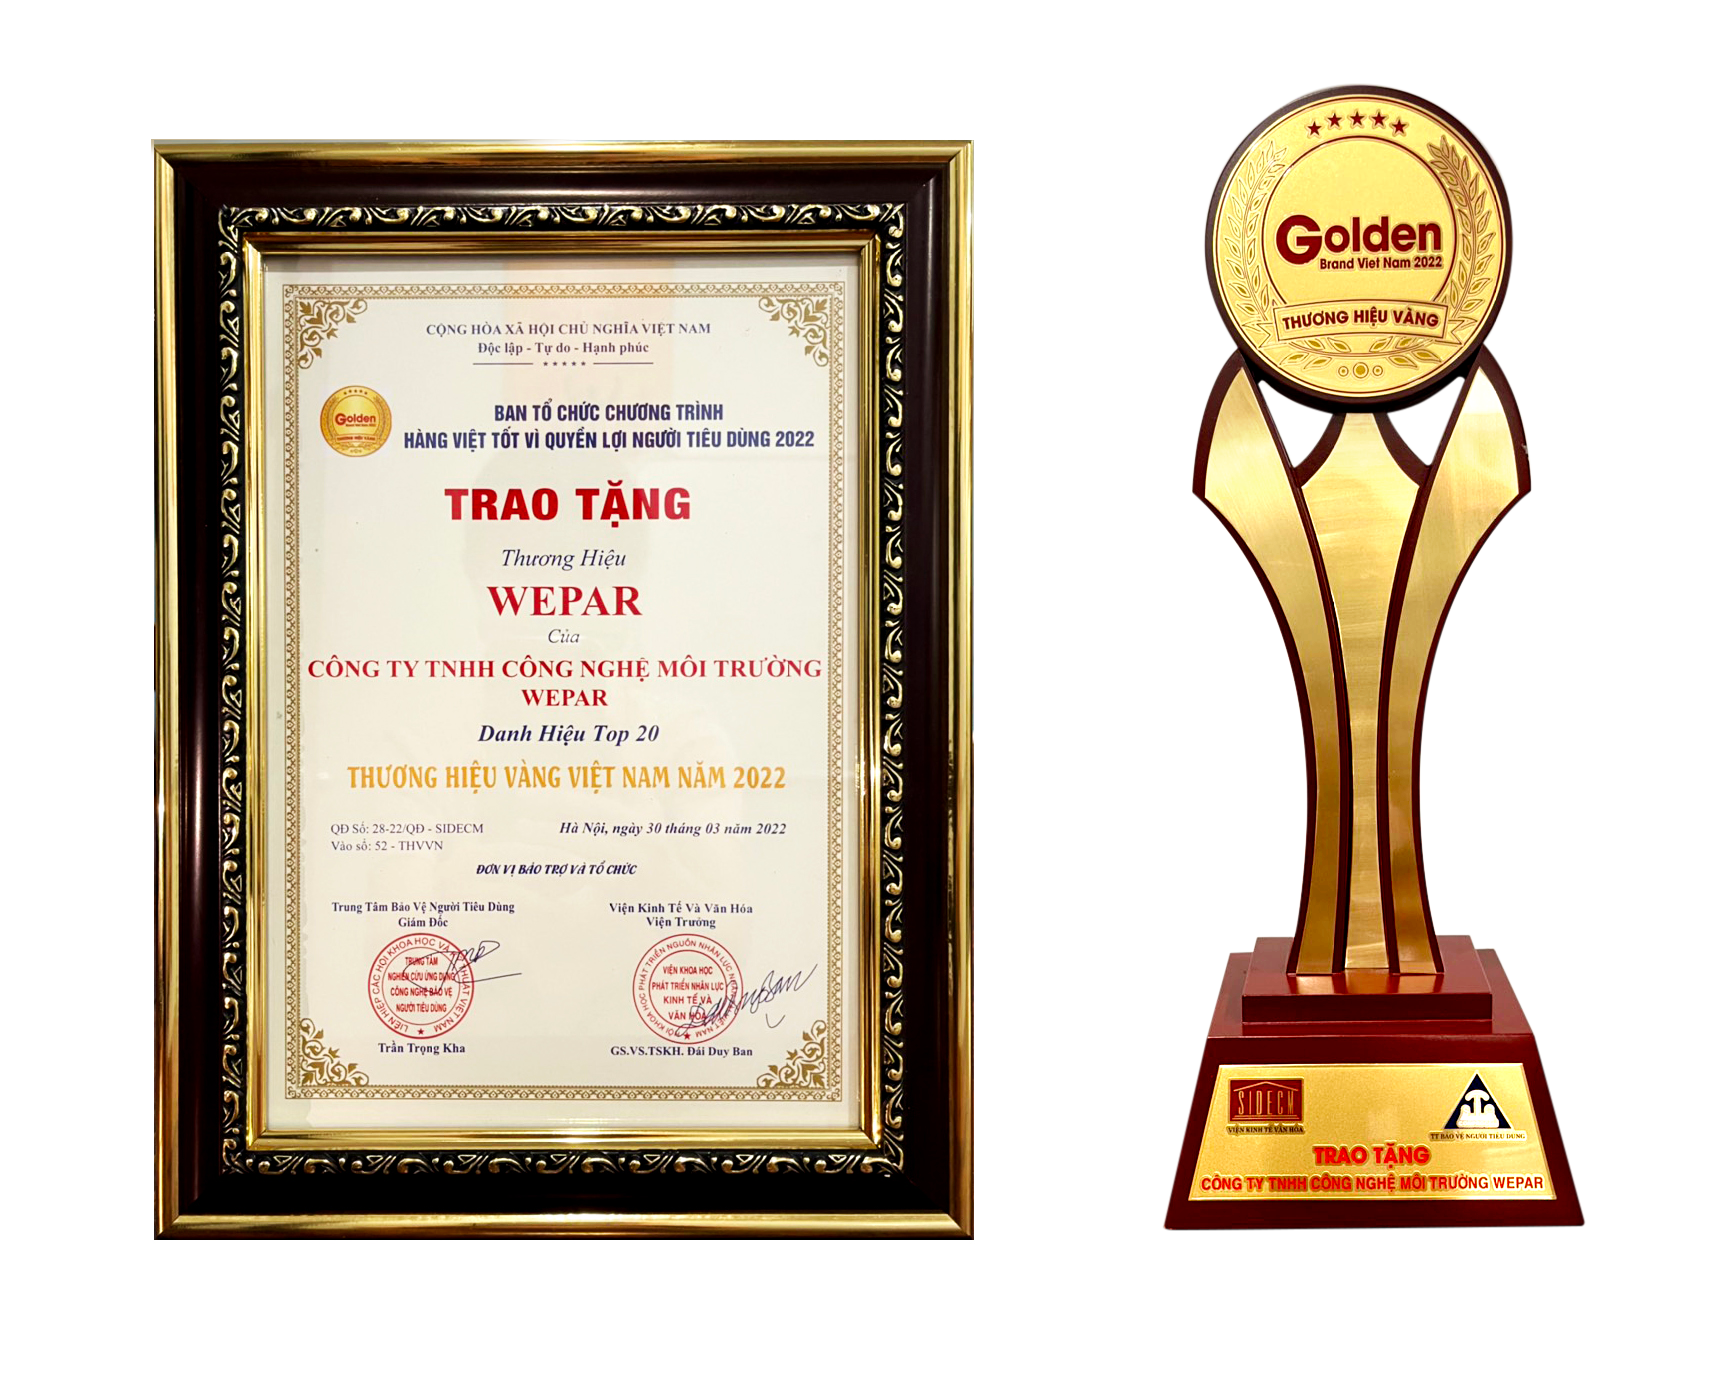 WEPAR – Tự hào Top 20 Thương hiệu Vàng Việt Nam